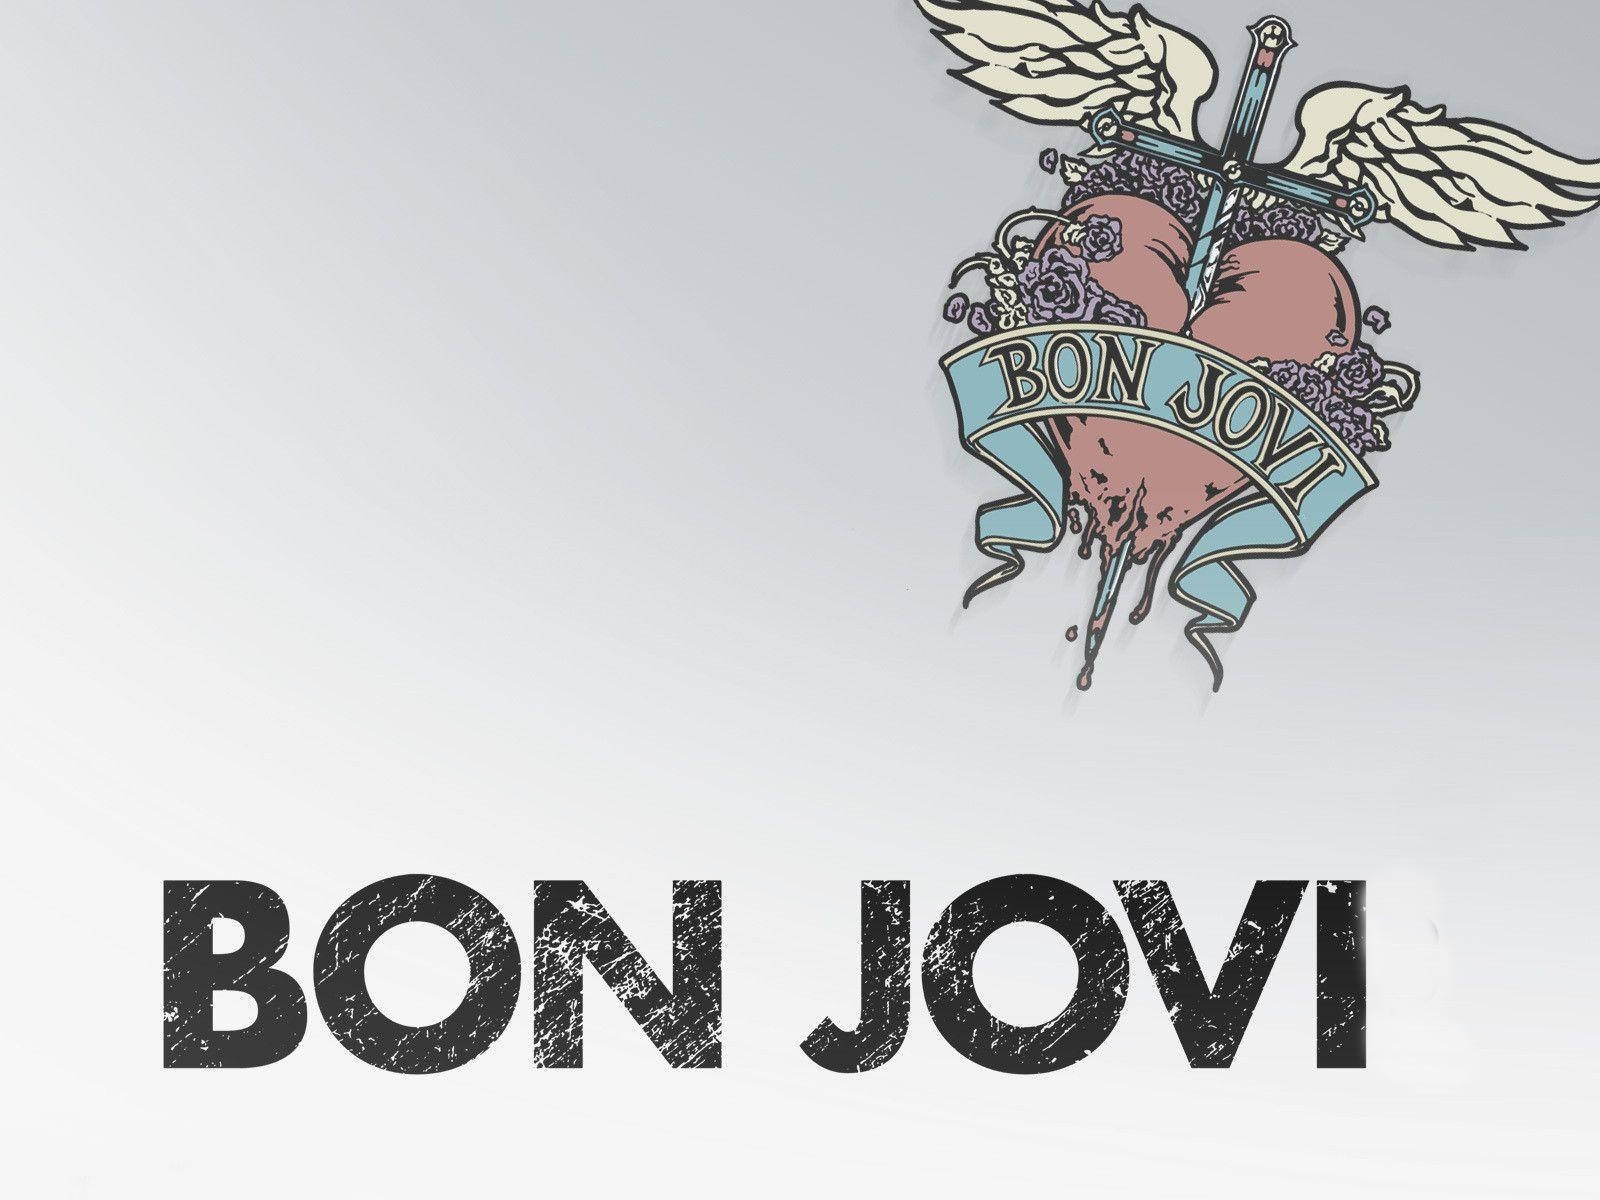 Bandaamericana De Rock Bon Jovi Logotipo Fanart. Papel de Parede